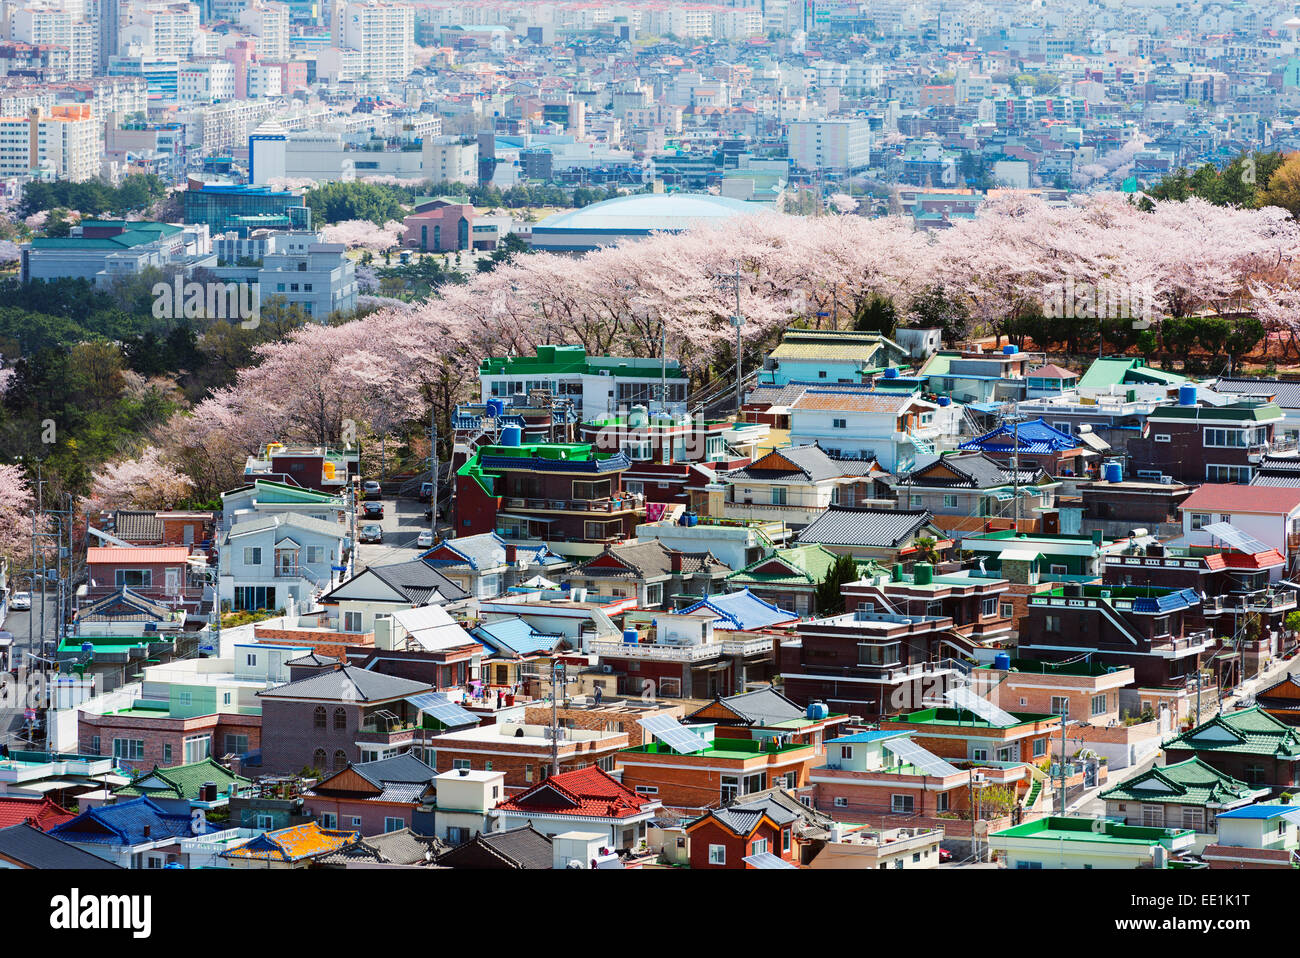 Spring cherry blossom festival, Jinhei, South Korea, Asia Stock Photo